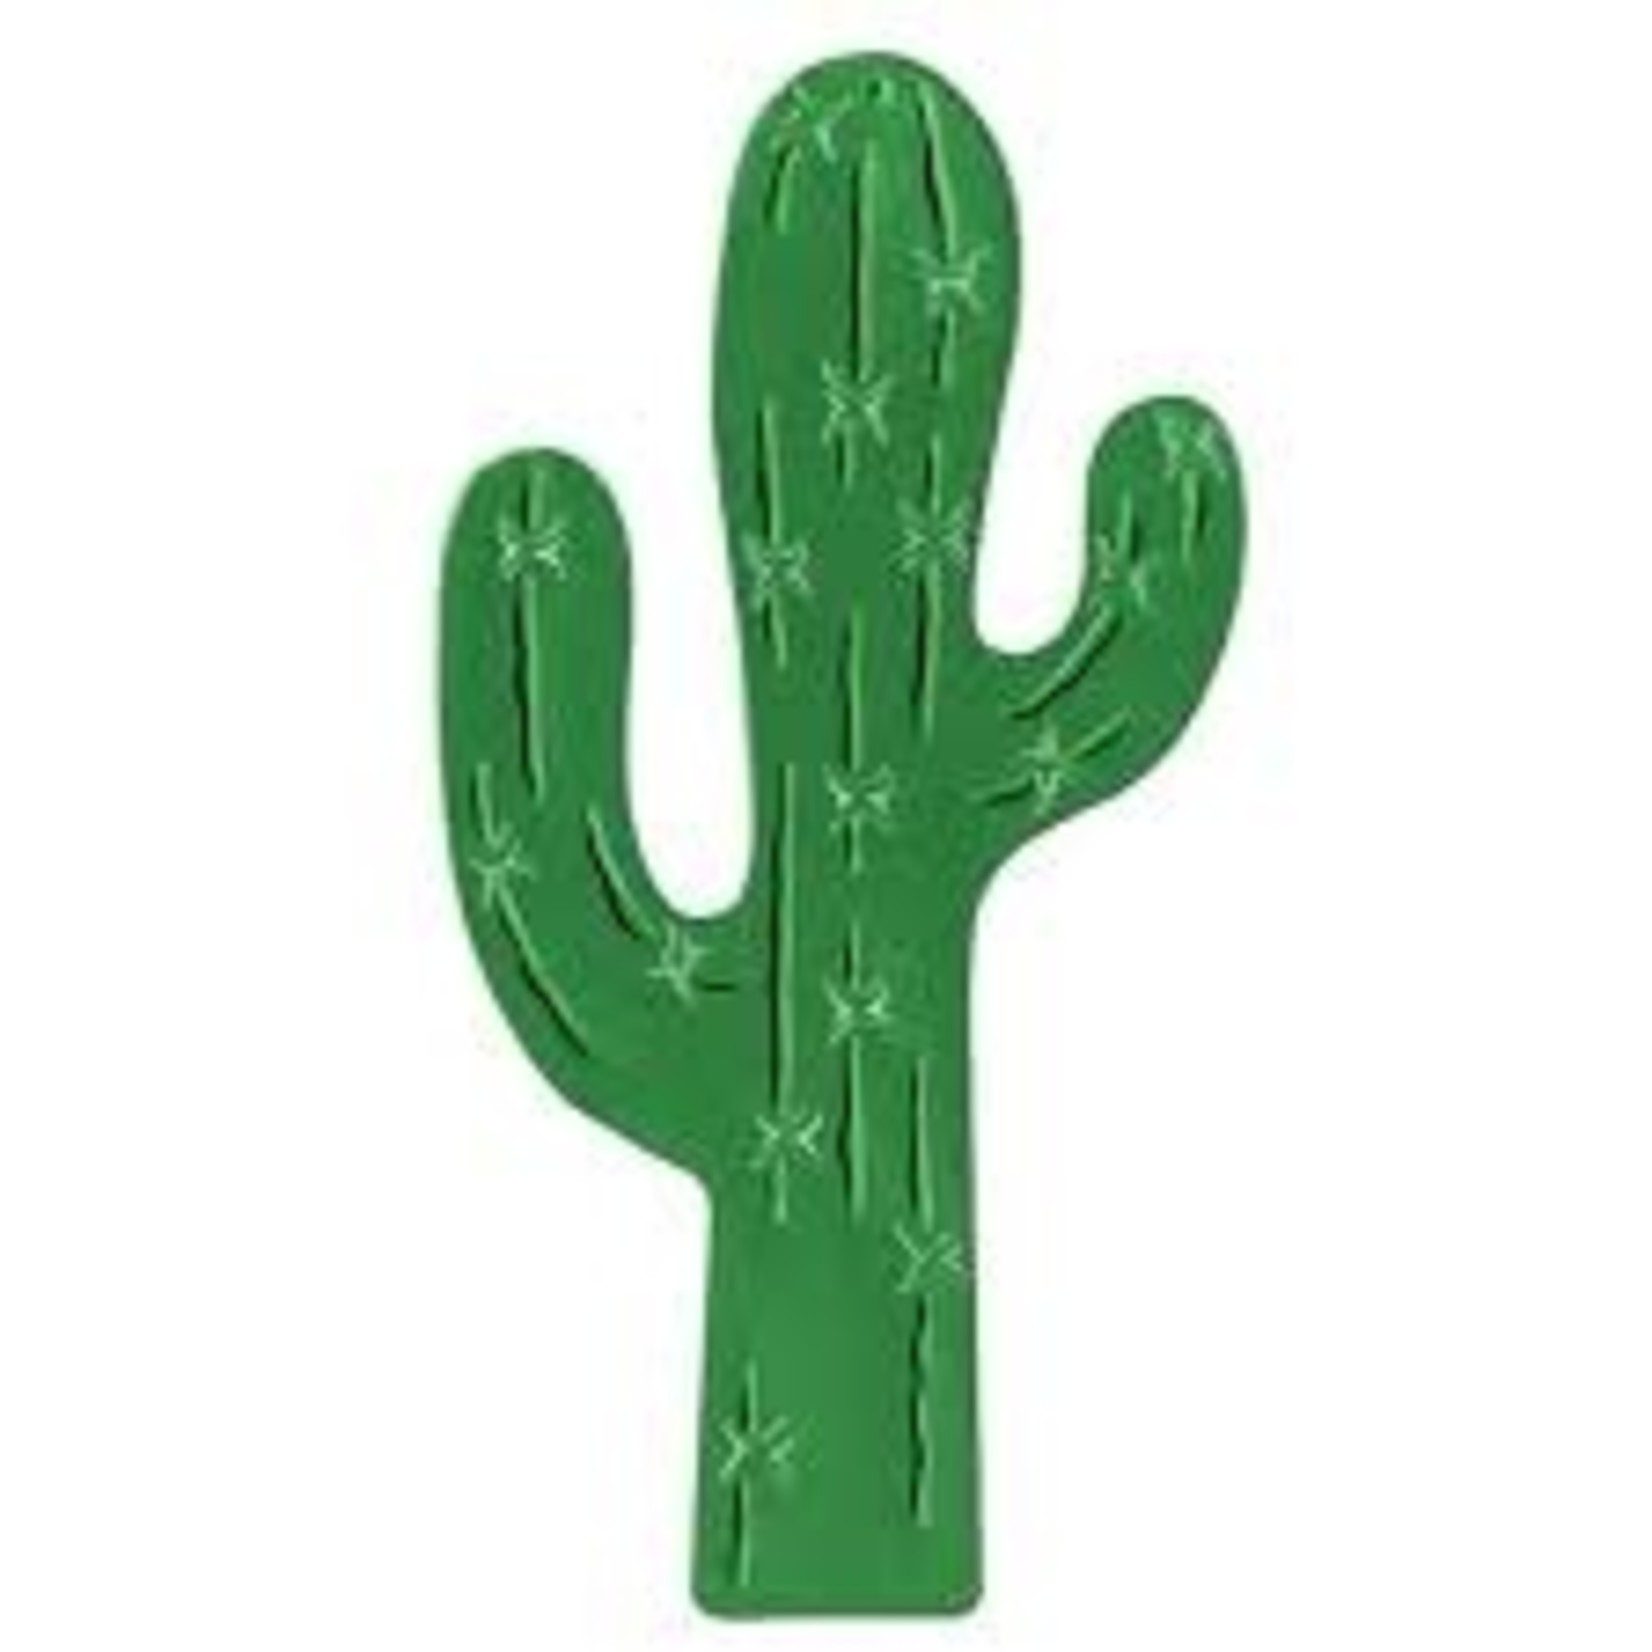 Foil Cactus Silhouette Cutout